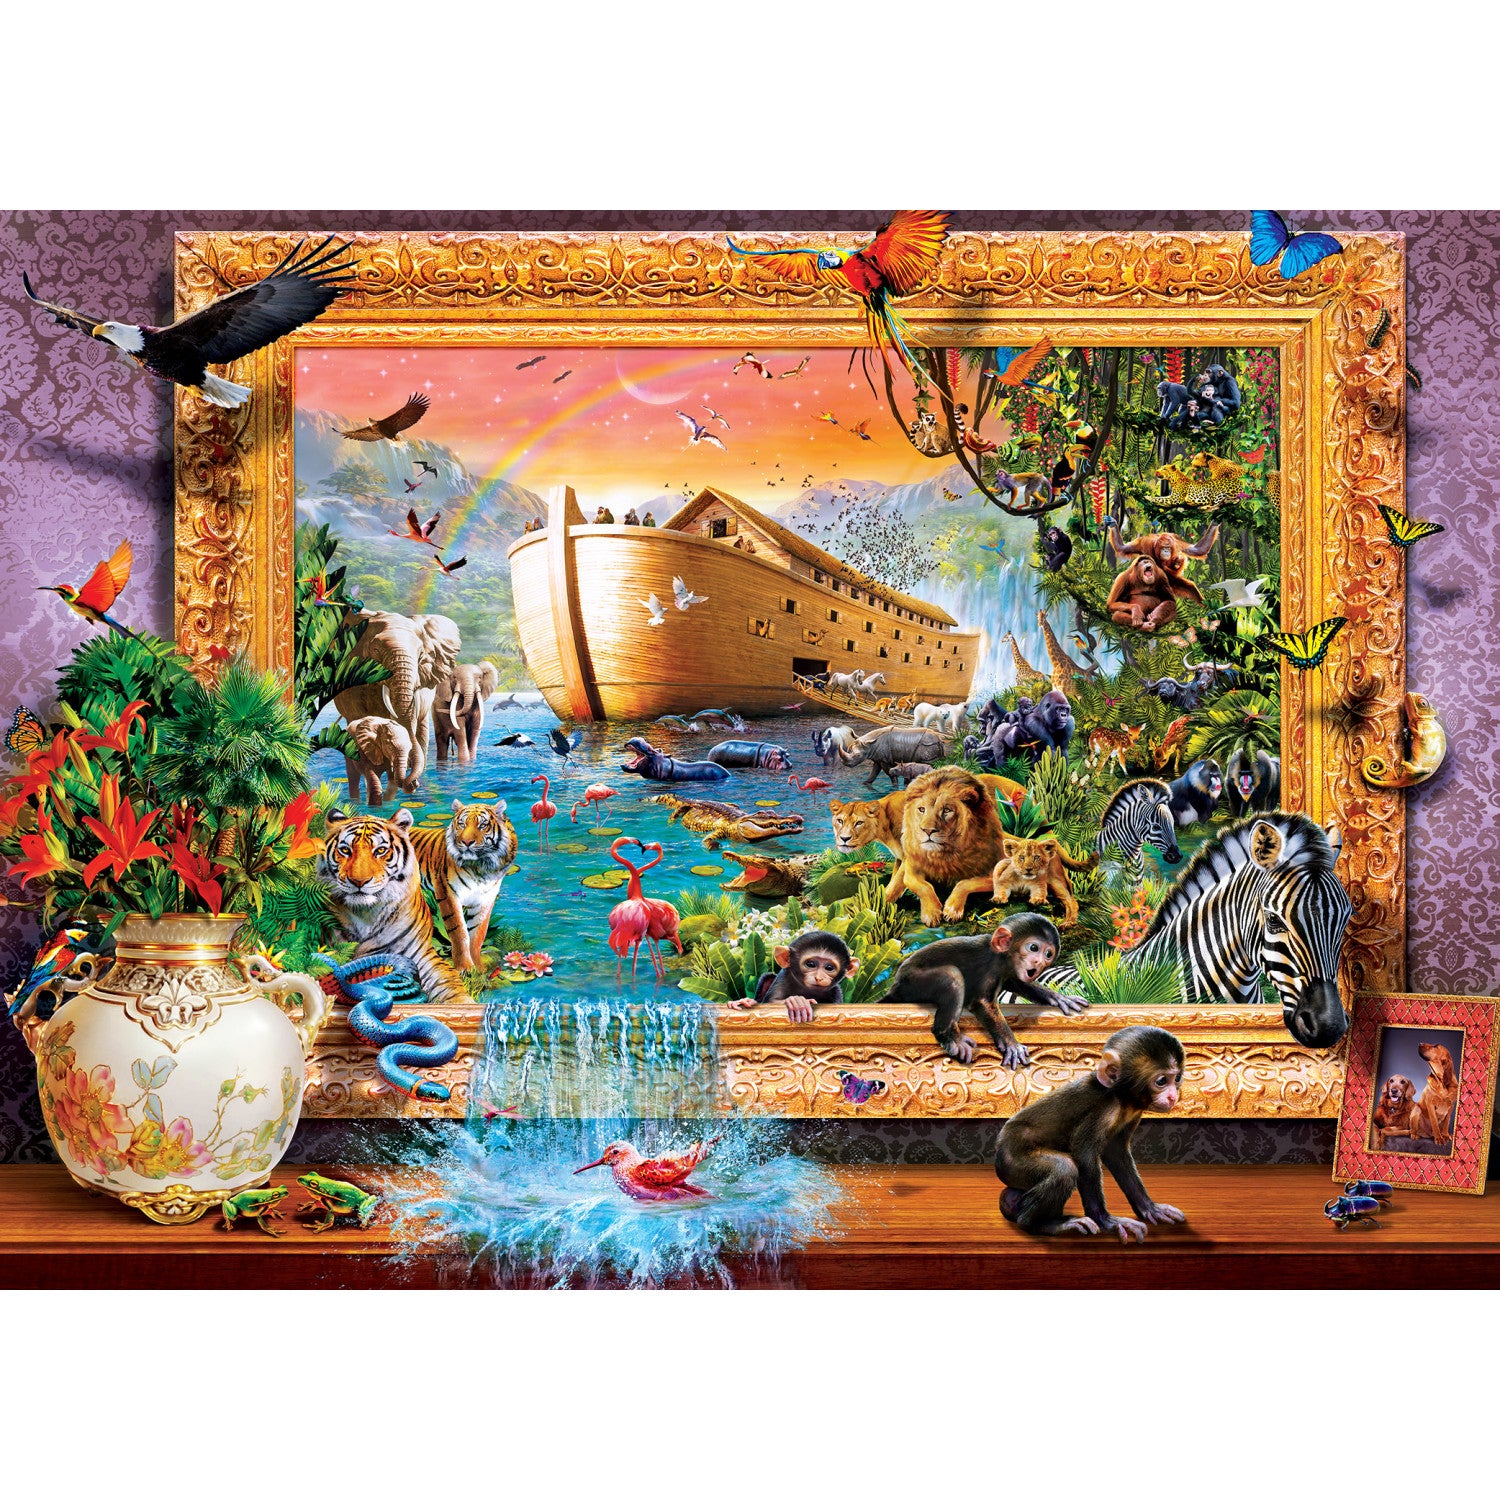 Inspirational - Noah's Ark Comes Alive 1000 Piece Puzzle